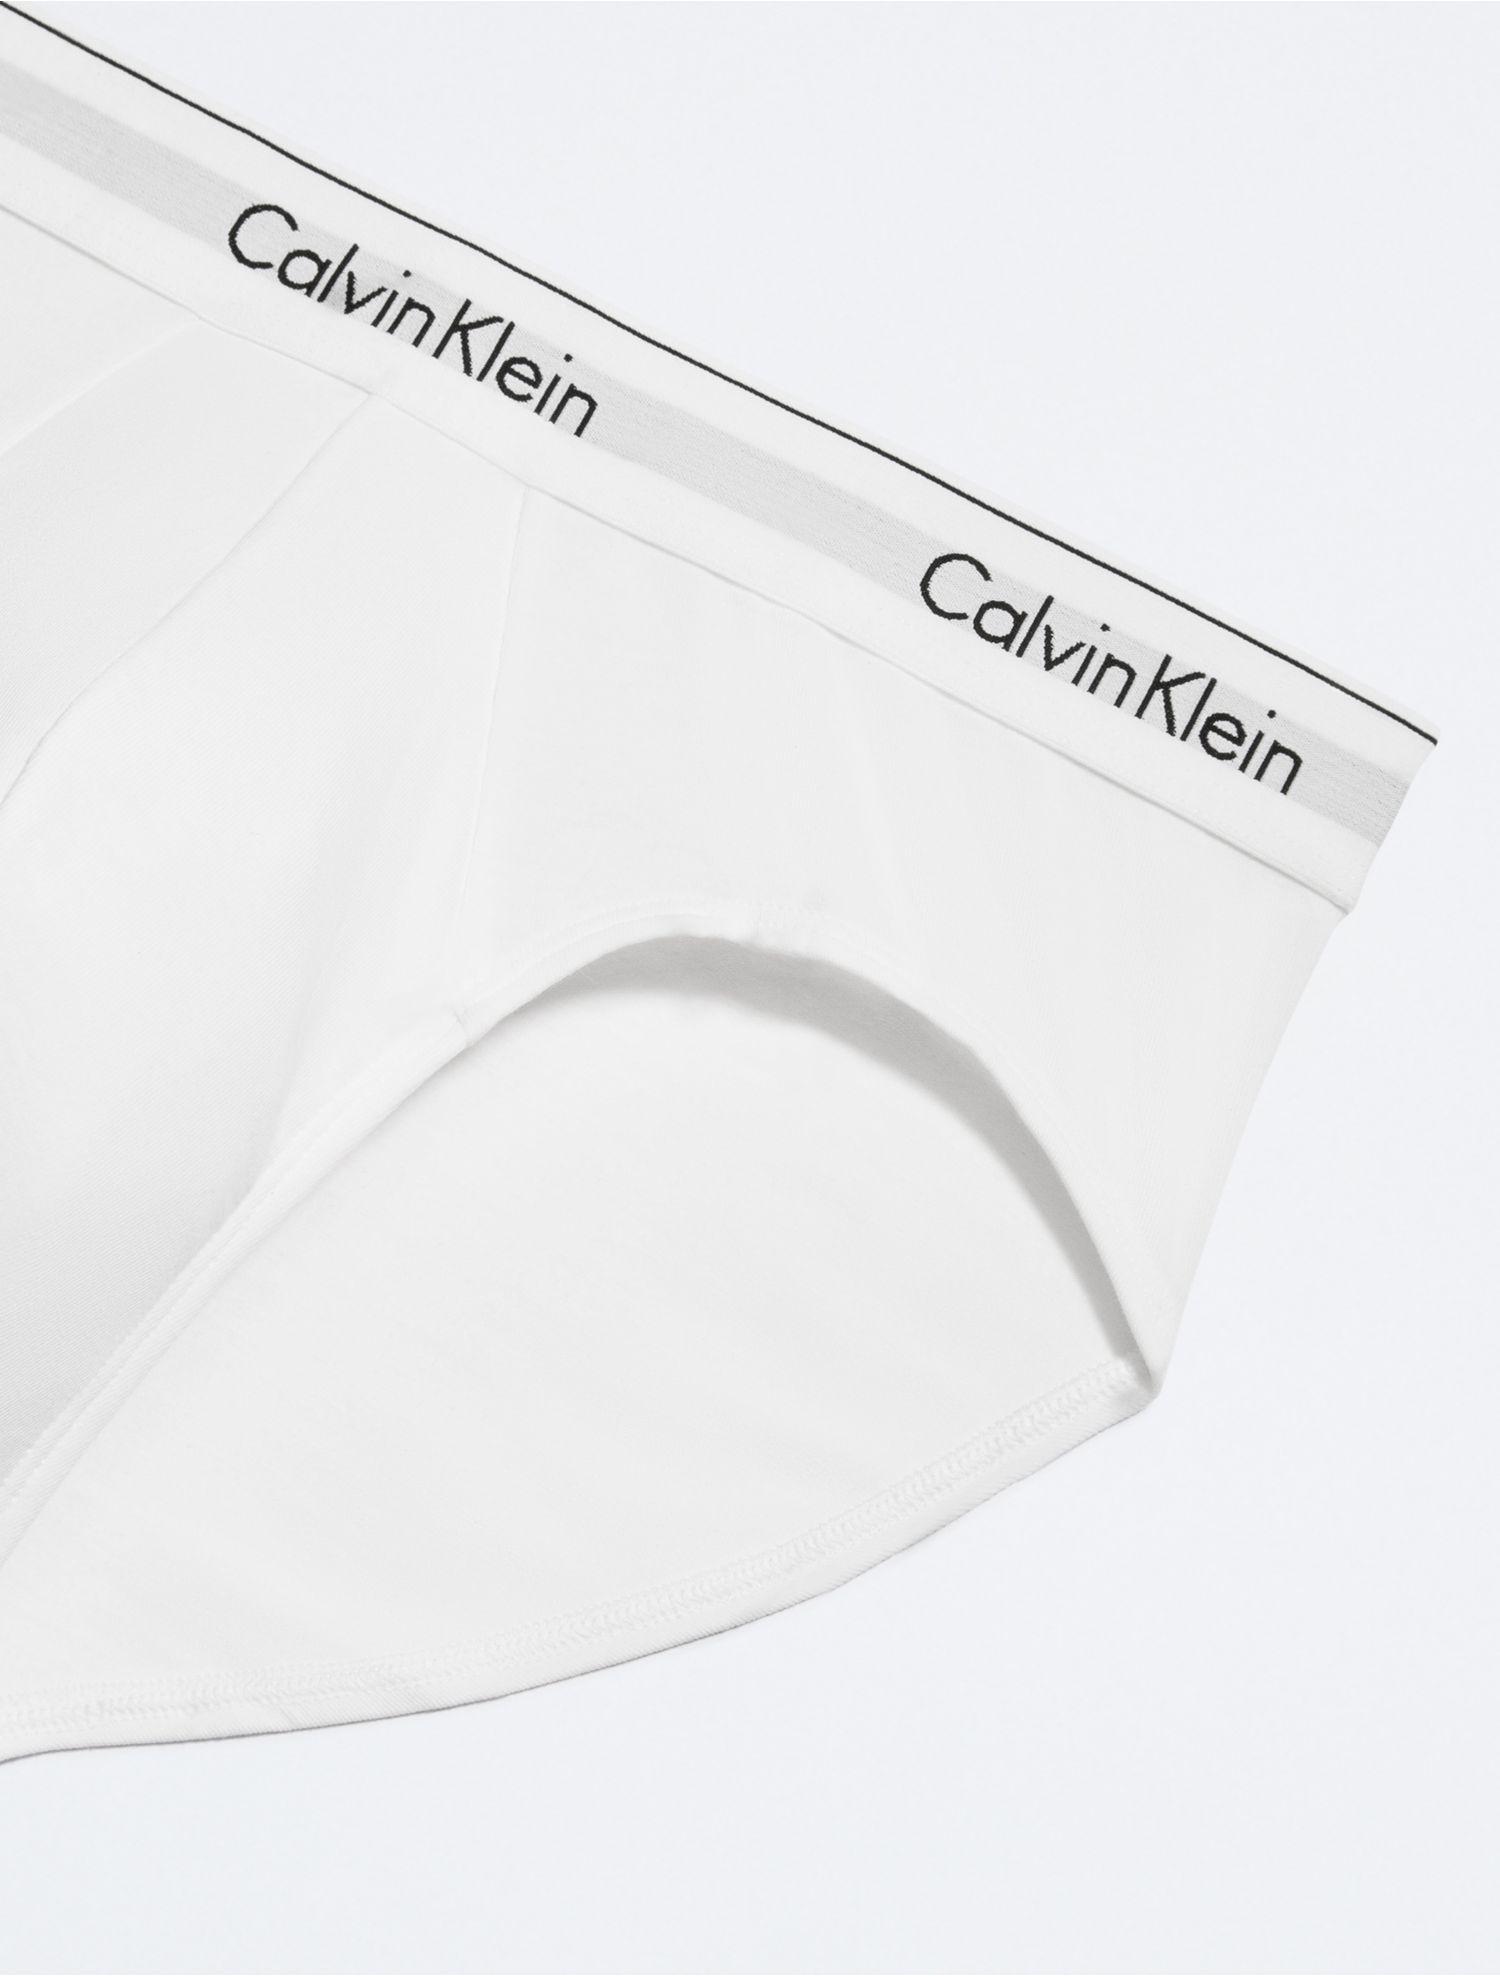 Watson's - Men's 100% cotton underwear, 3 pack hip briefs, white